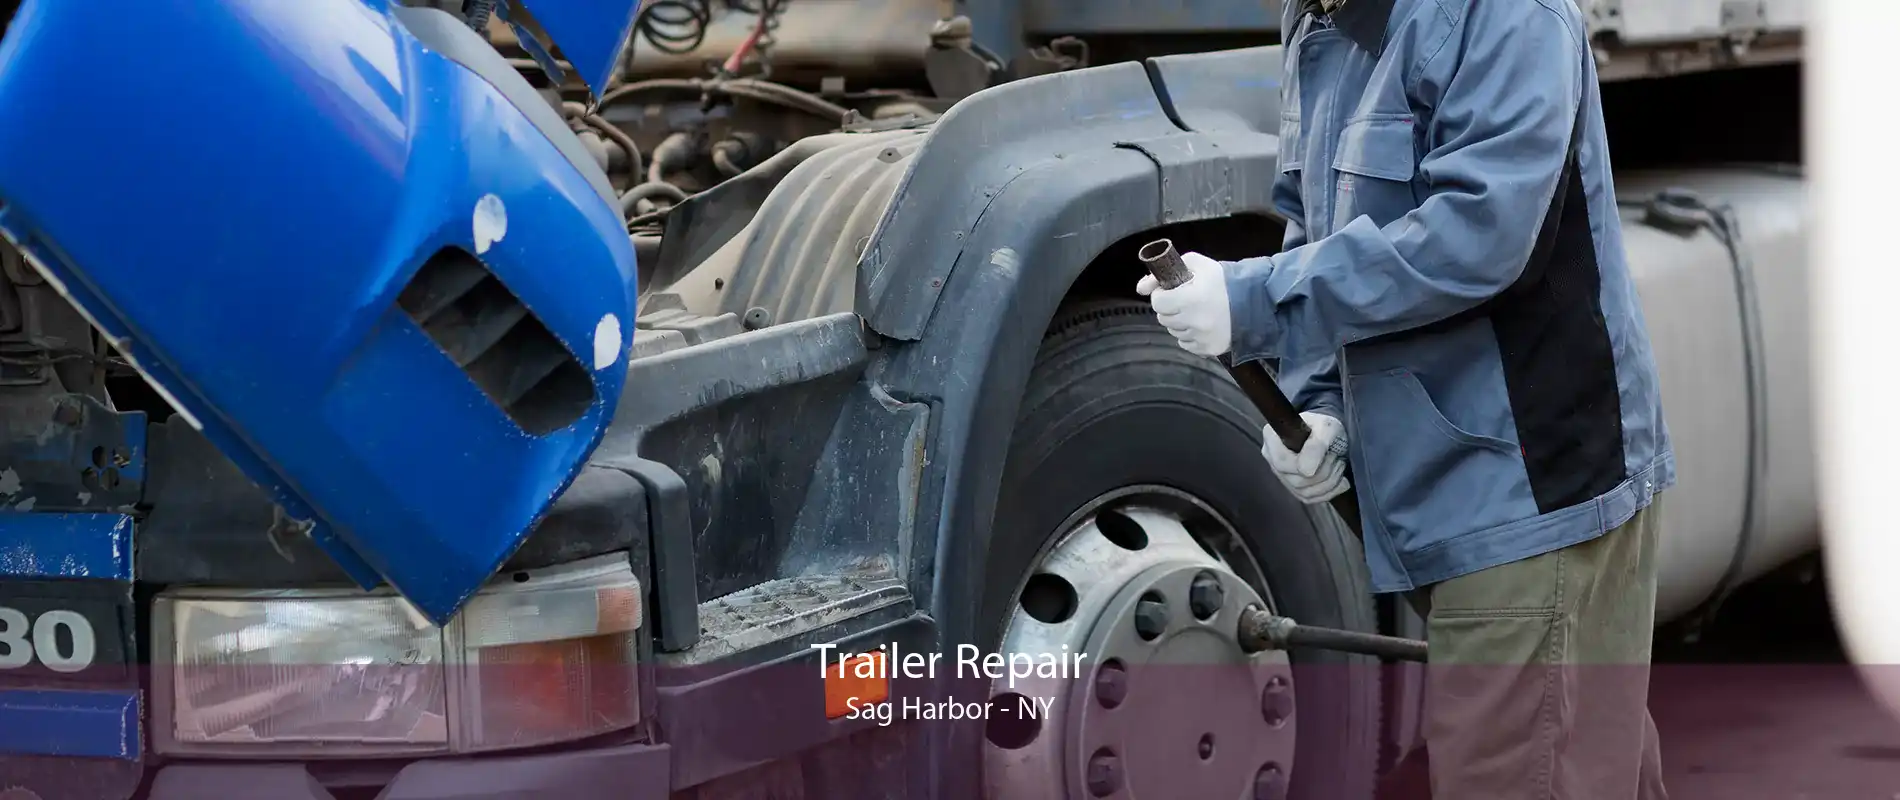 Trailer Repair Sag Harbor - NY